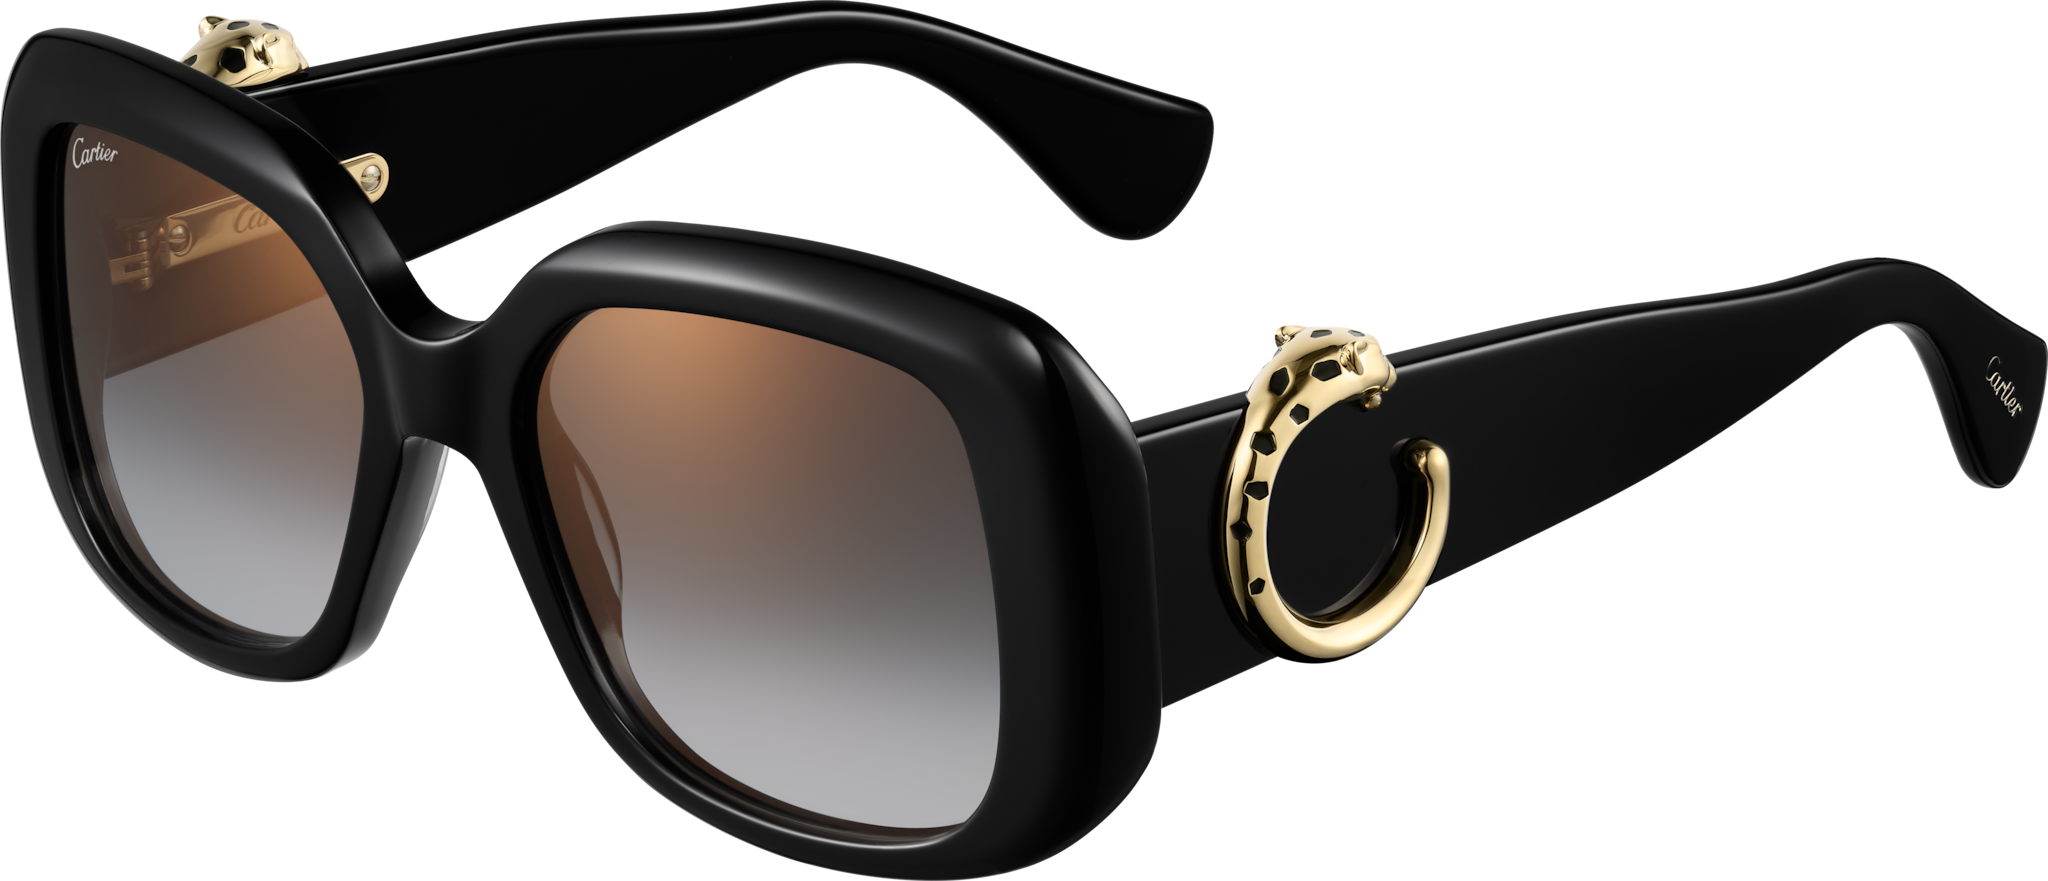 Panthère de Cartier SunglassesBlack composite, grey lenses